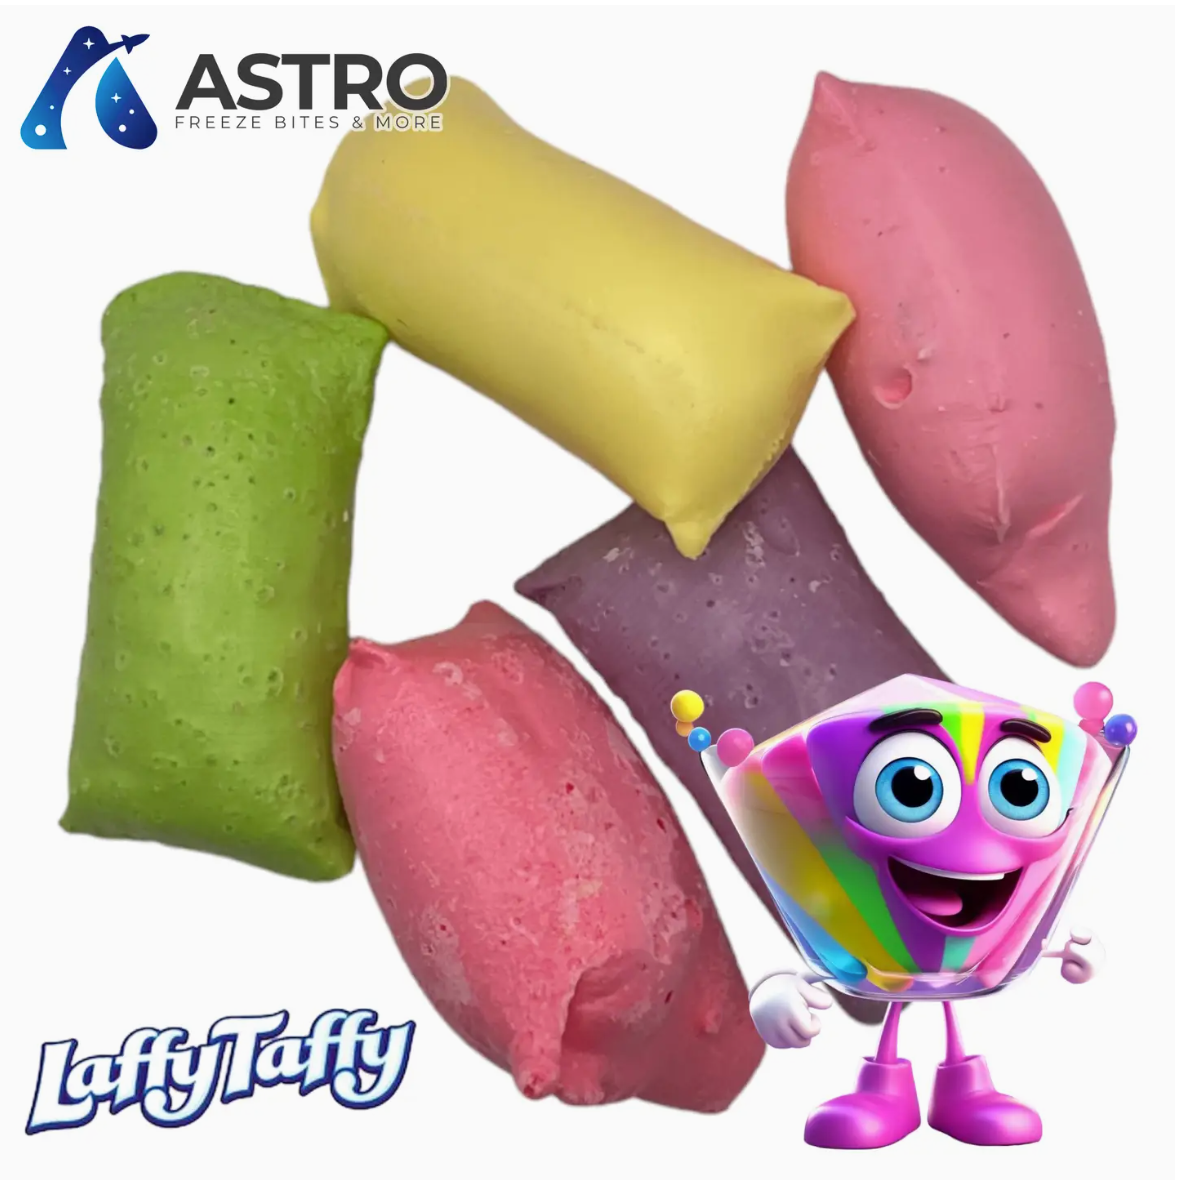 Astro Freeze Bites